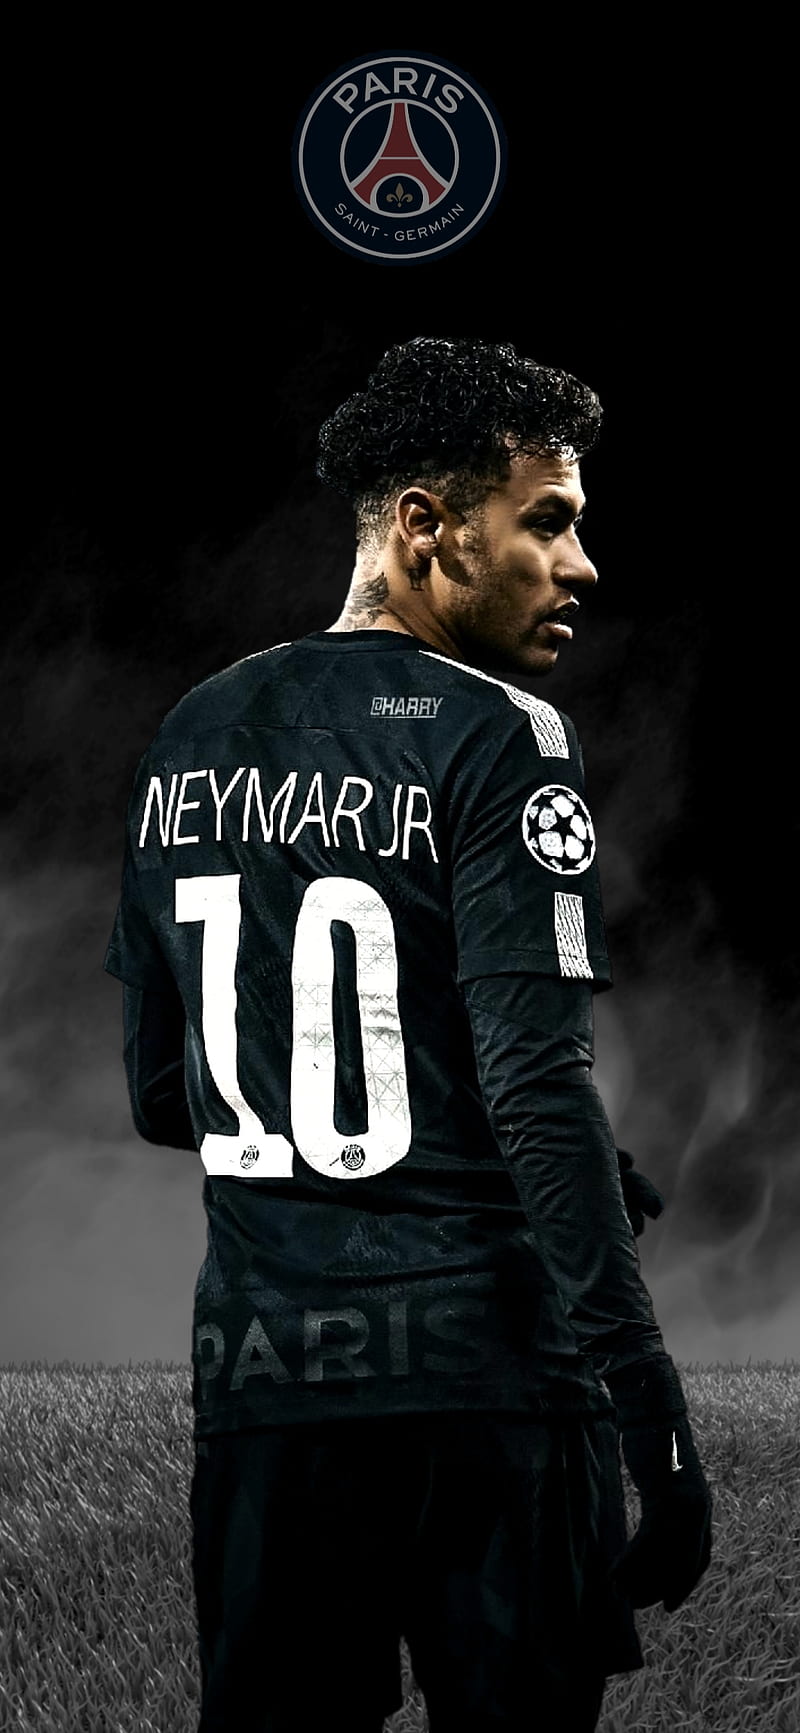 Ddpart Sports on Twitter Wallpaper Neymar  PSG ParisSaintGermain  httpstcoLjb5rsopmj  Twitter